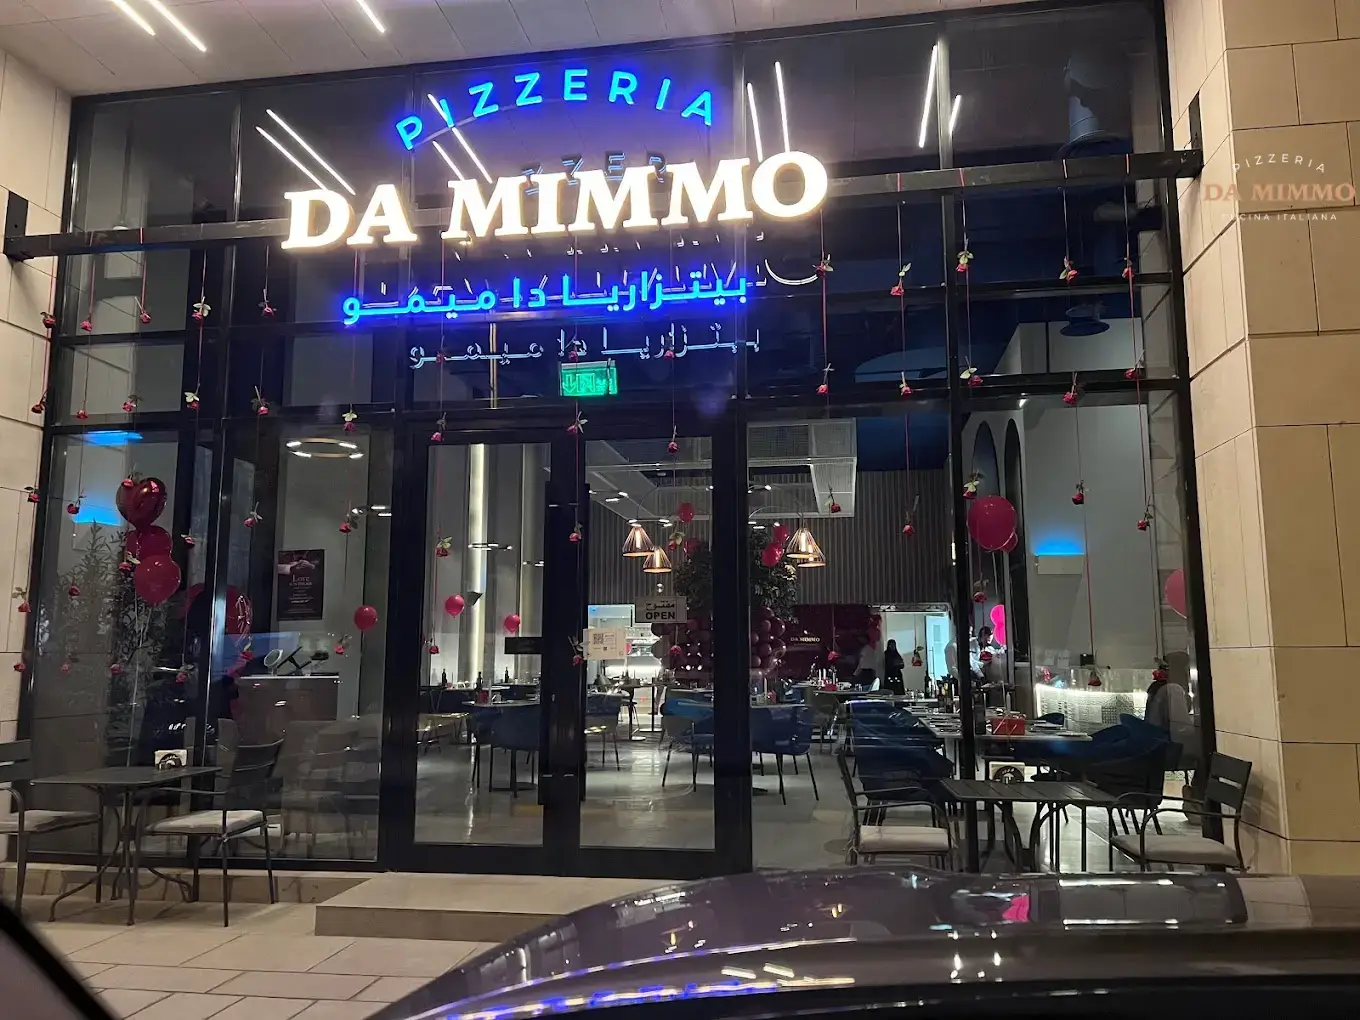 في قلب مدينة الرياض، تجد بيتزاريا دا ميمو، المطعم الإيطالي الذي يعدّ من افضل مطعم ايطالي في الرياض.